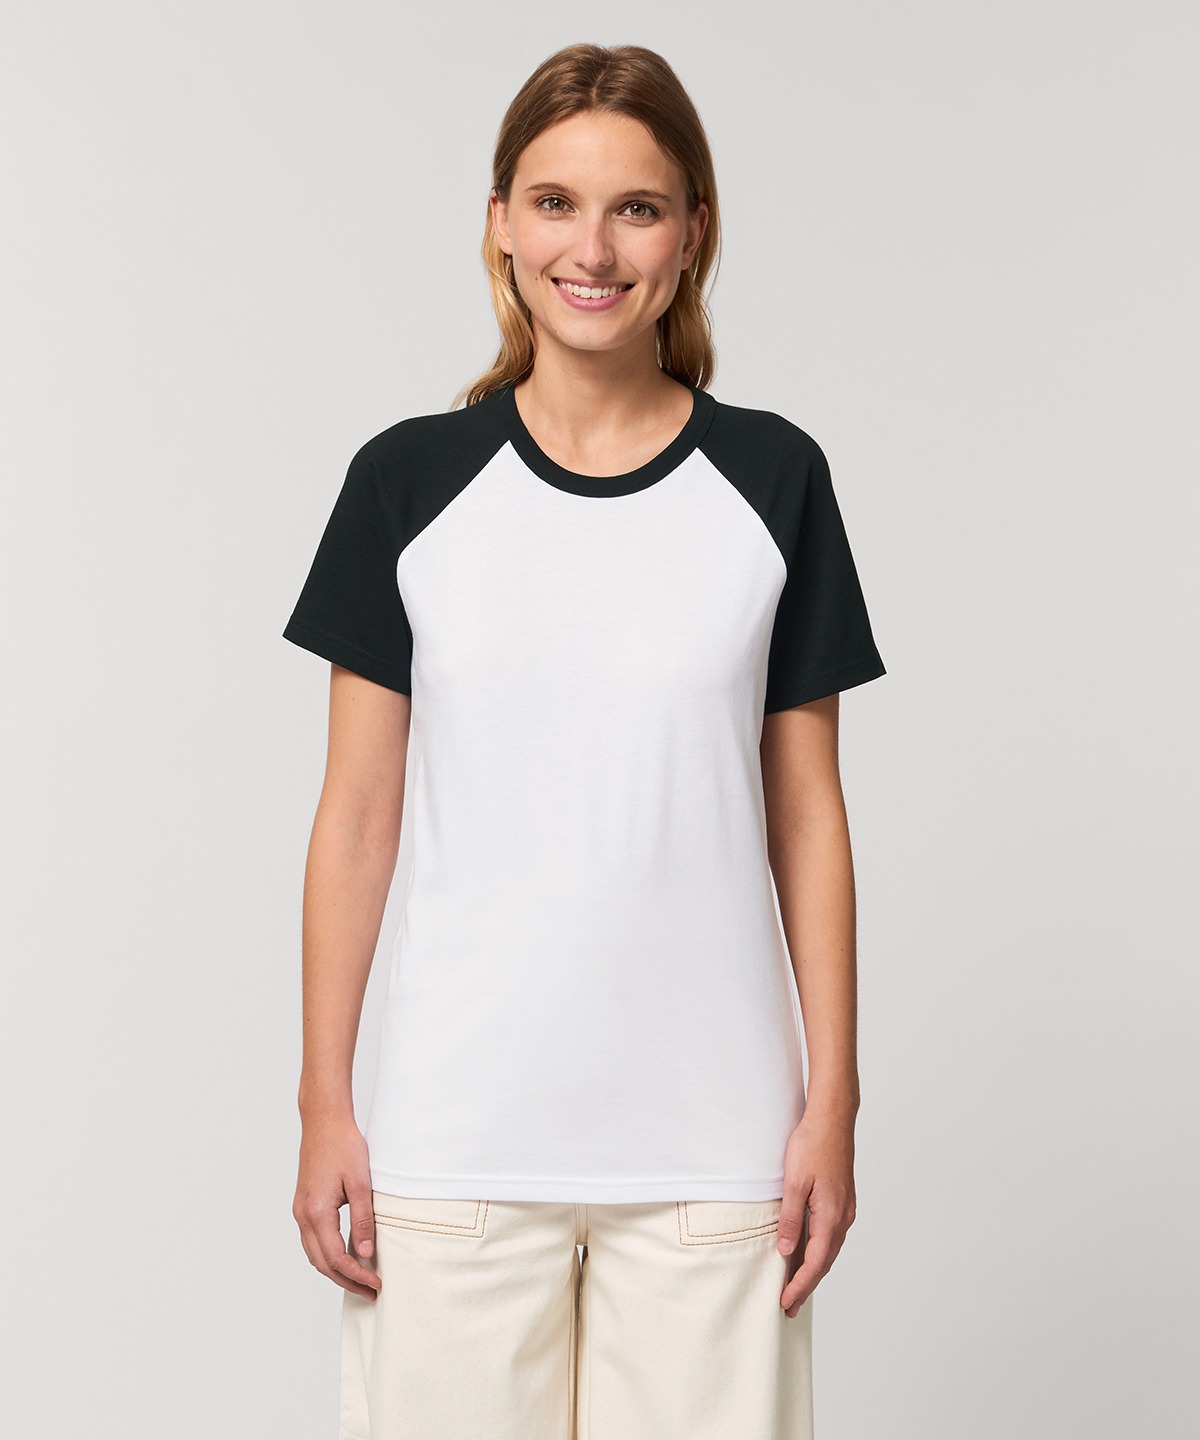 Catcher Unisex Short Sleeve T-Shirt